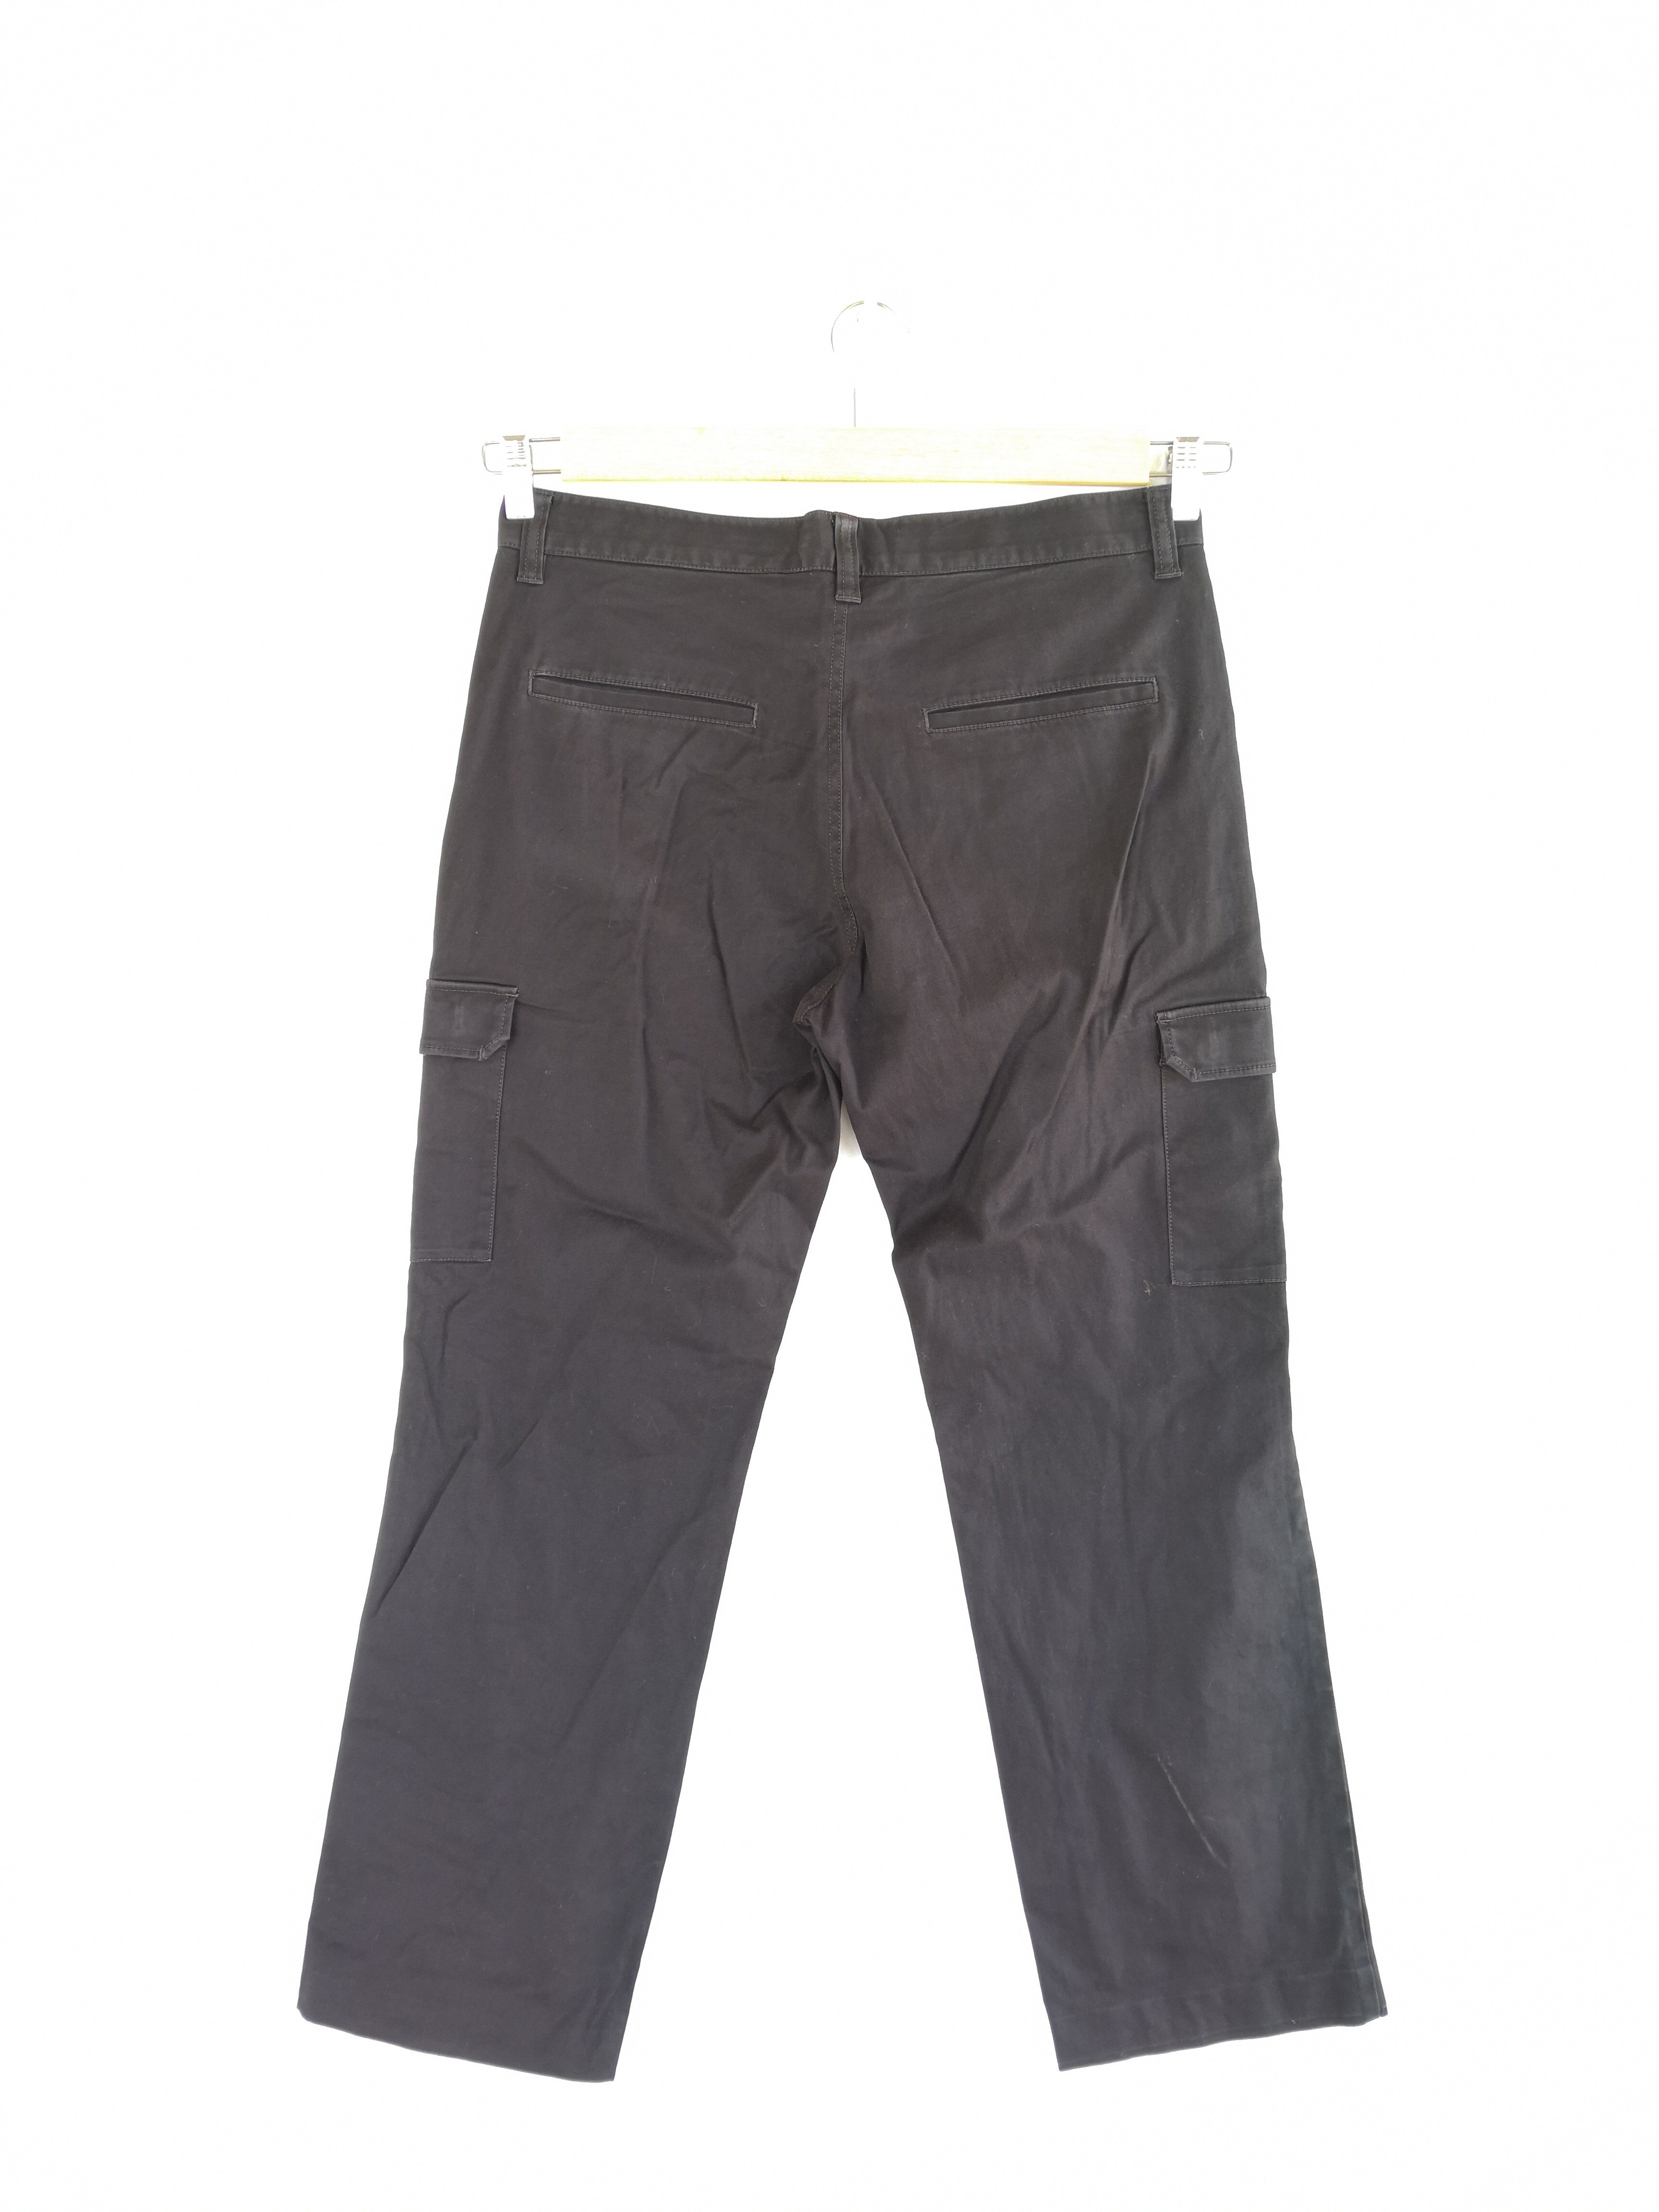 Vintage - GDO Japanese Cargo Pants Bondage Trousers Utility Pants - 2